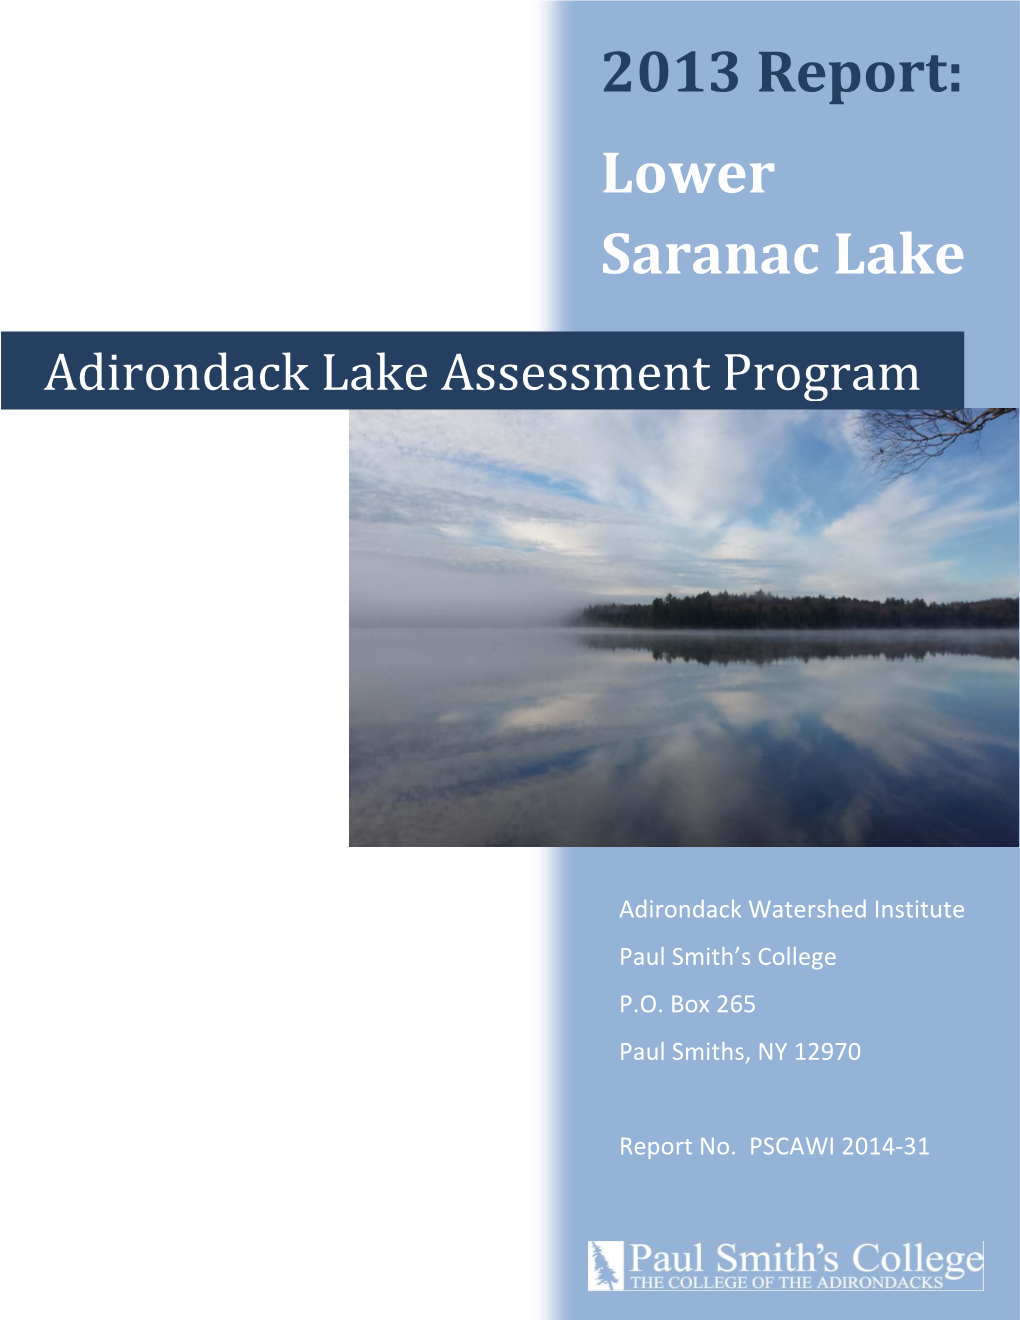 Lower Saranac Lake